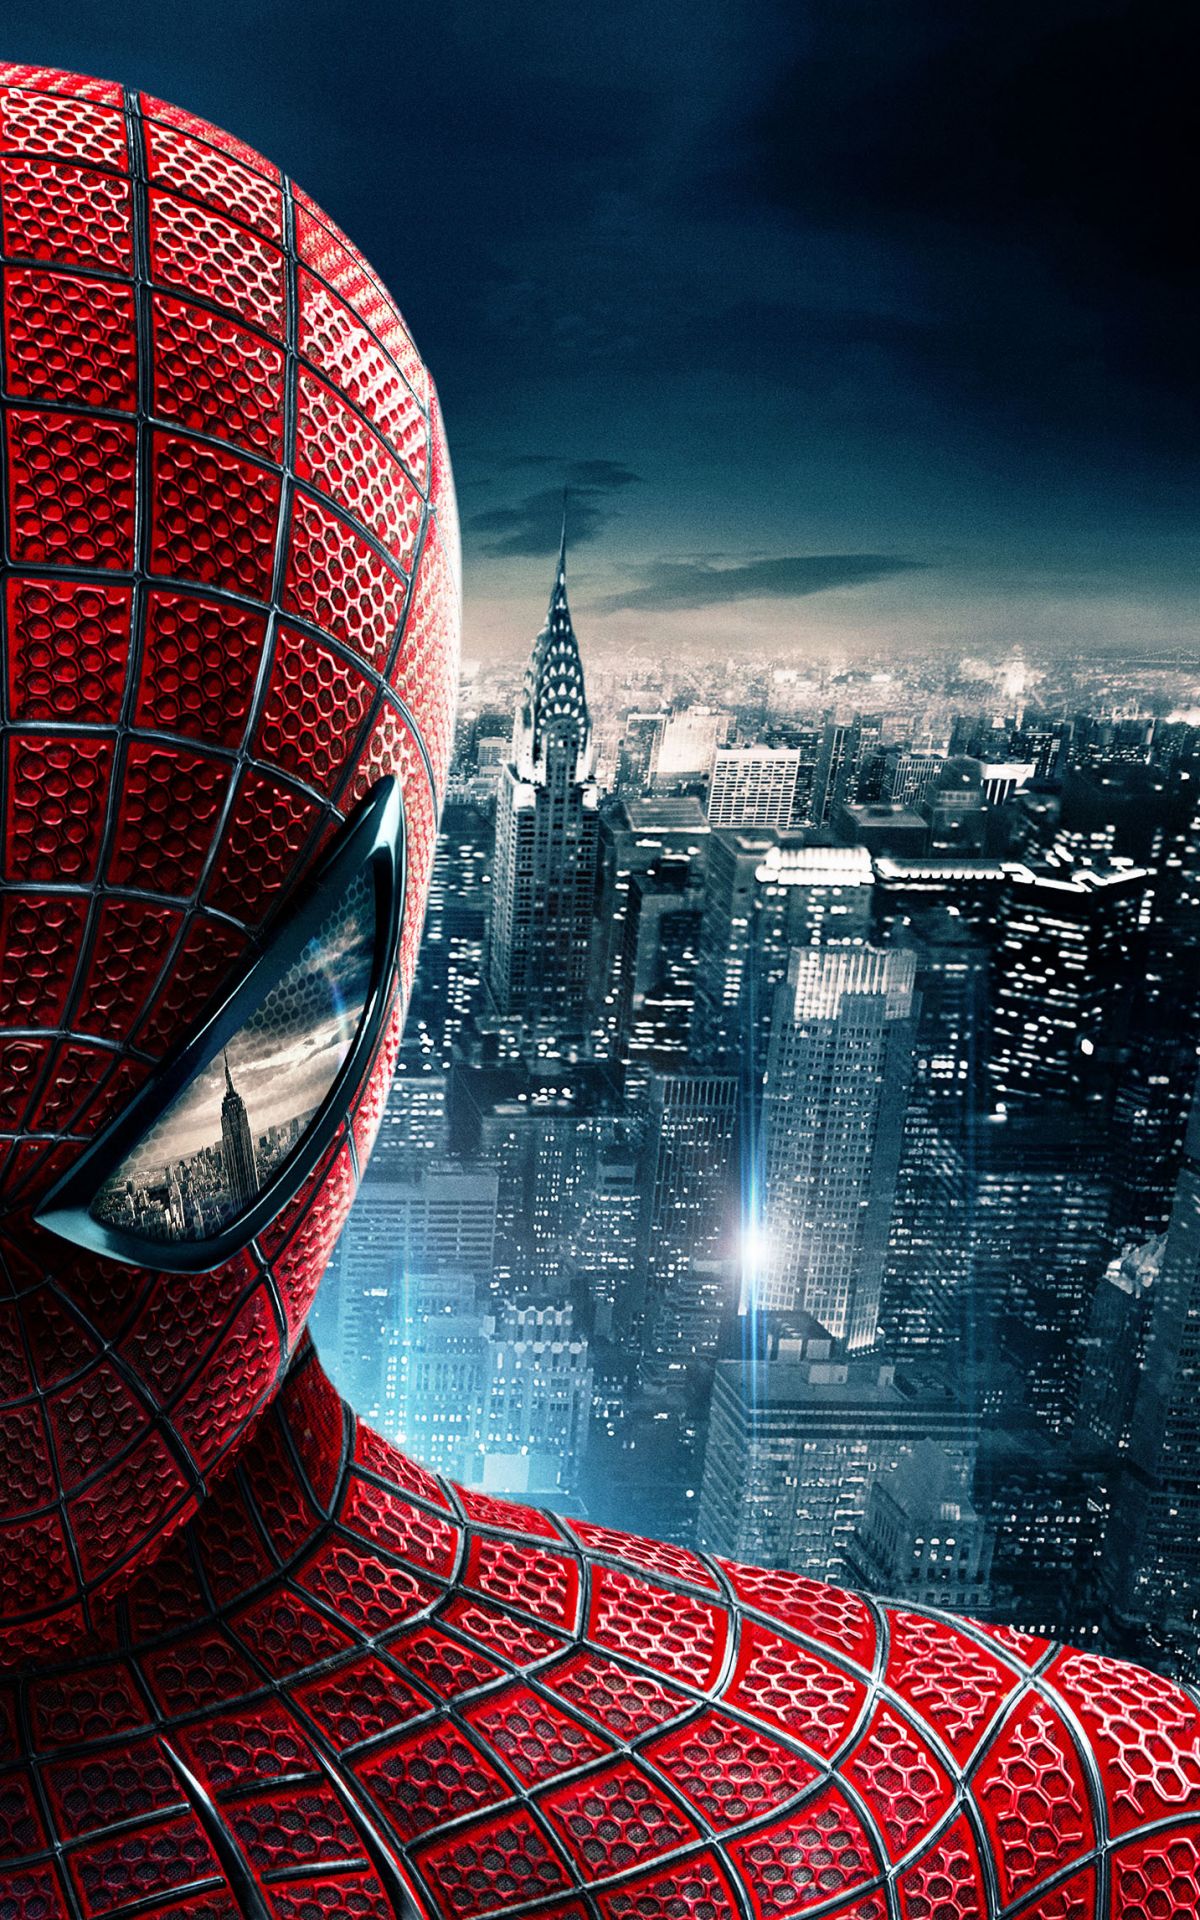 Descarga gratuita de fondo de pantalla para móvil de Películas, Superhéroe, El Sorprendente Hombre Araña, Hombre Araña, Spider Man.